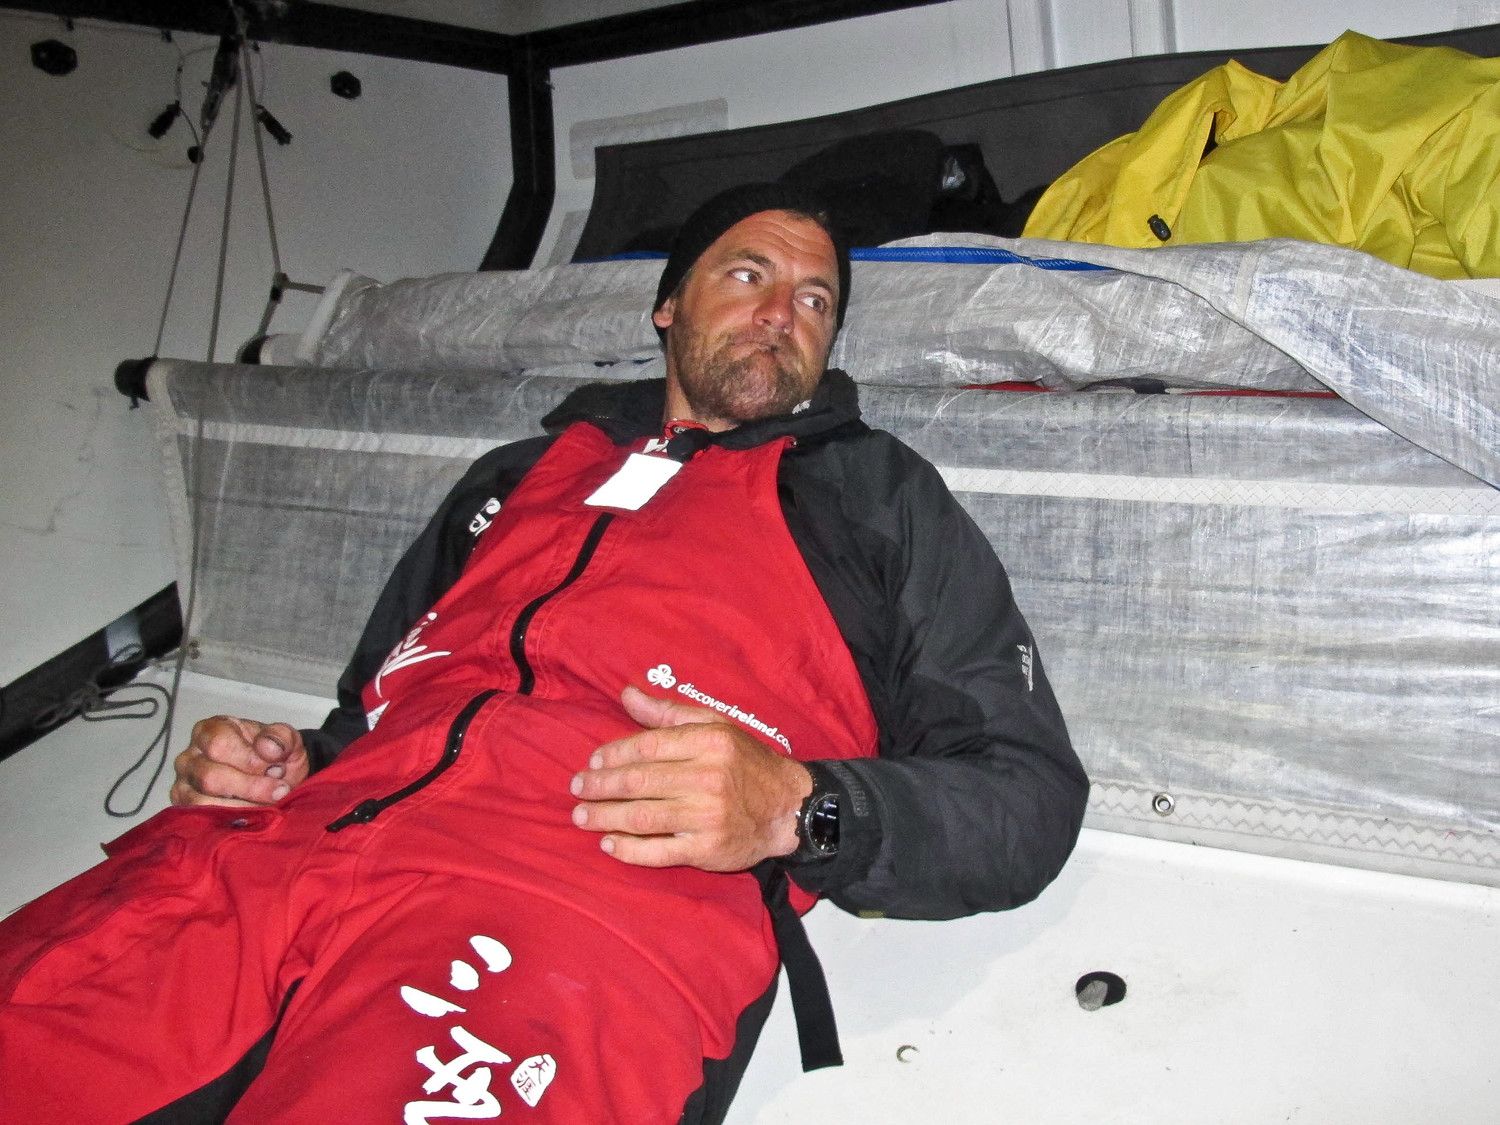 Richard Mason ist nach der langen Reparatur-Arbeit erschöpft und frustriert über die Situation. © AndrÃes Soriano/Team Sanya/Volvo Ocean Race